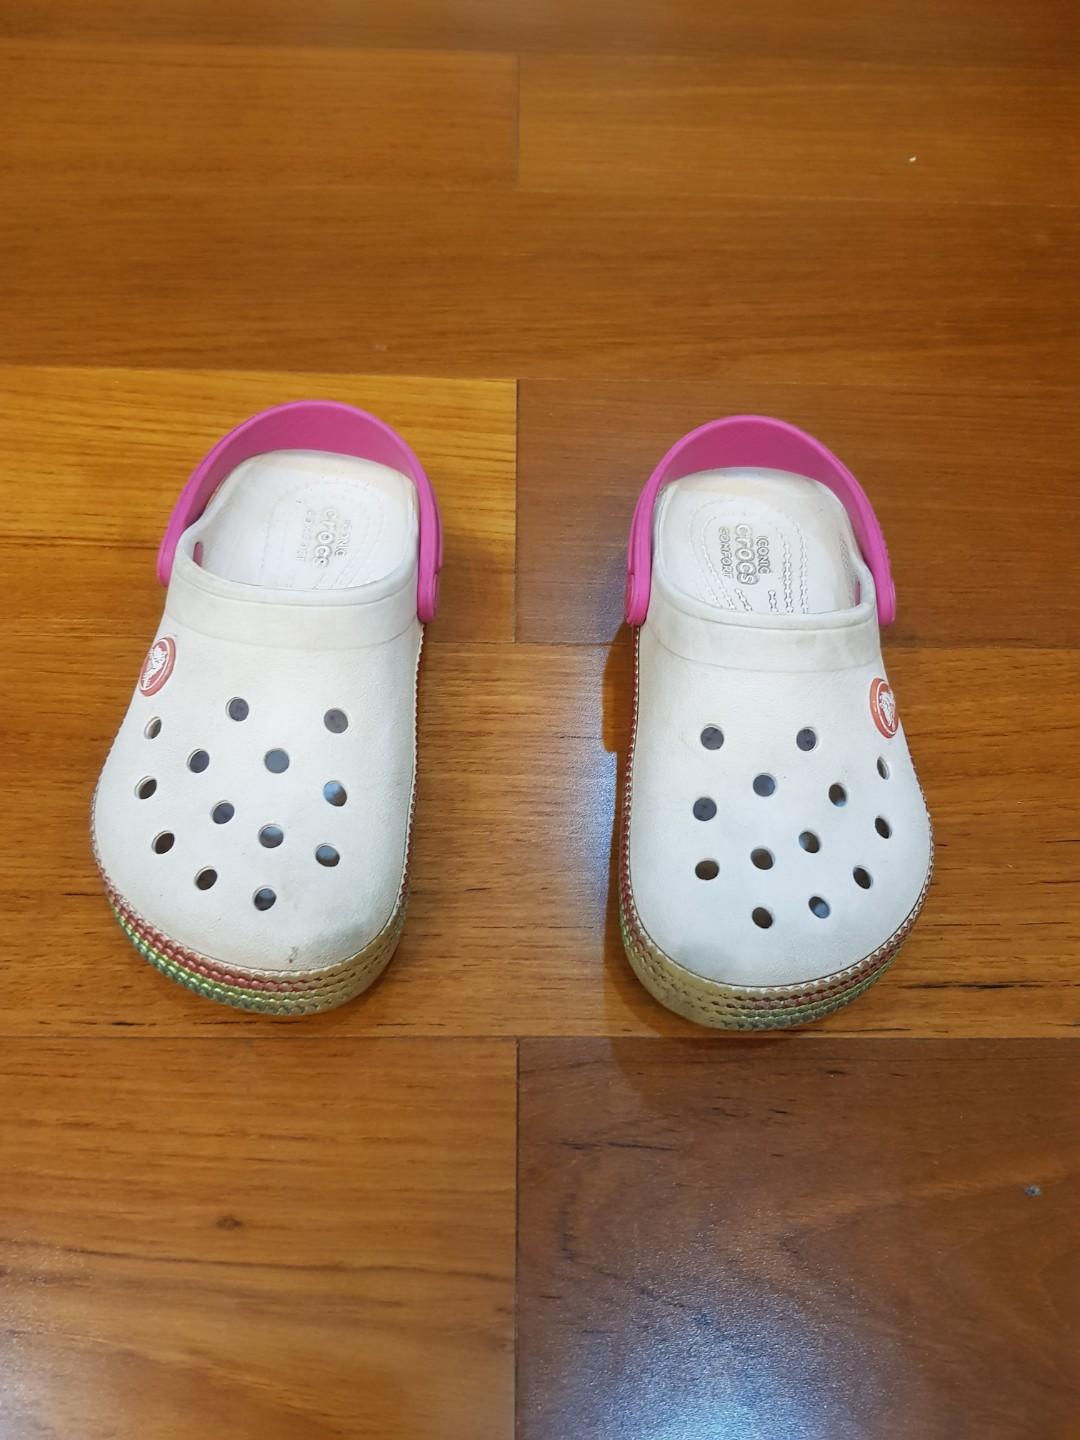 Crocs size C11 sale at P299, Babies 